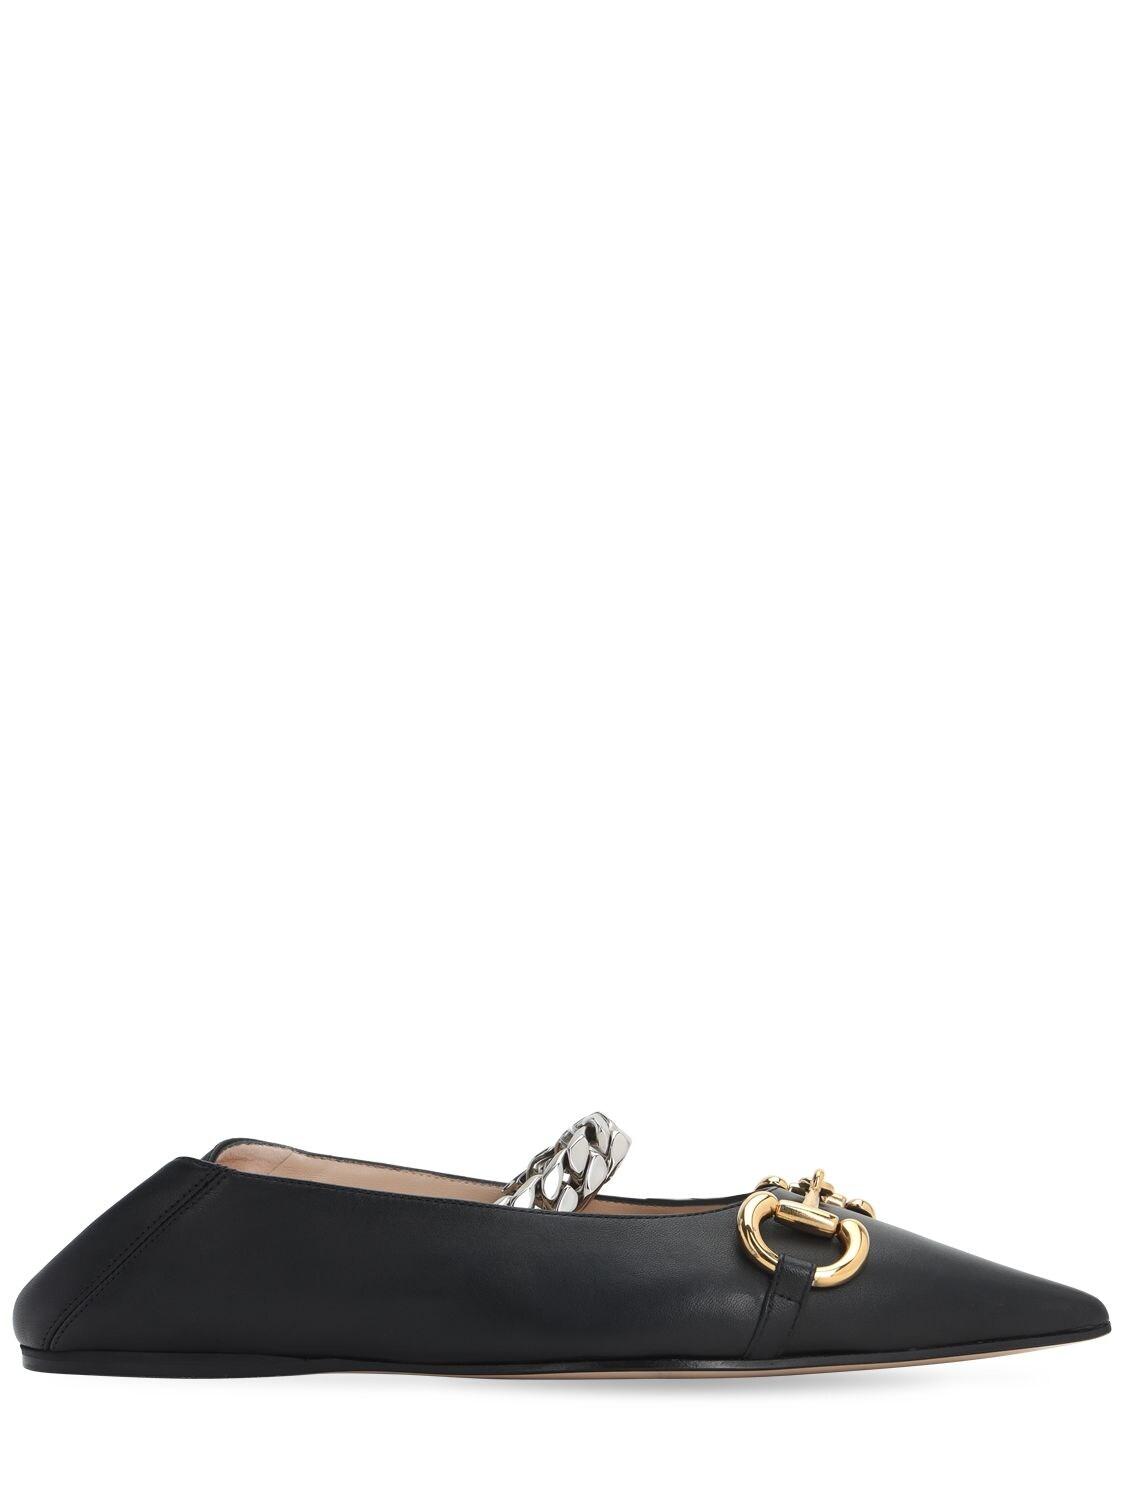 Gucci Leather Deva Chain-strap Ballerina Flats in Black - Save 28% - Lyst